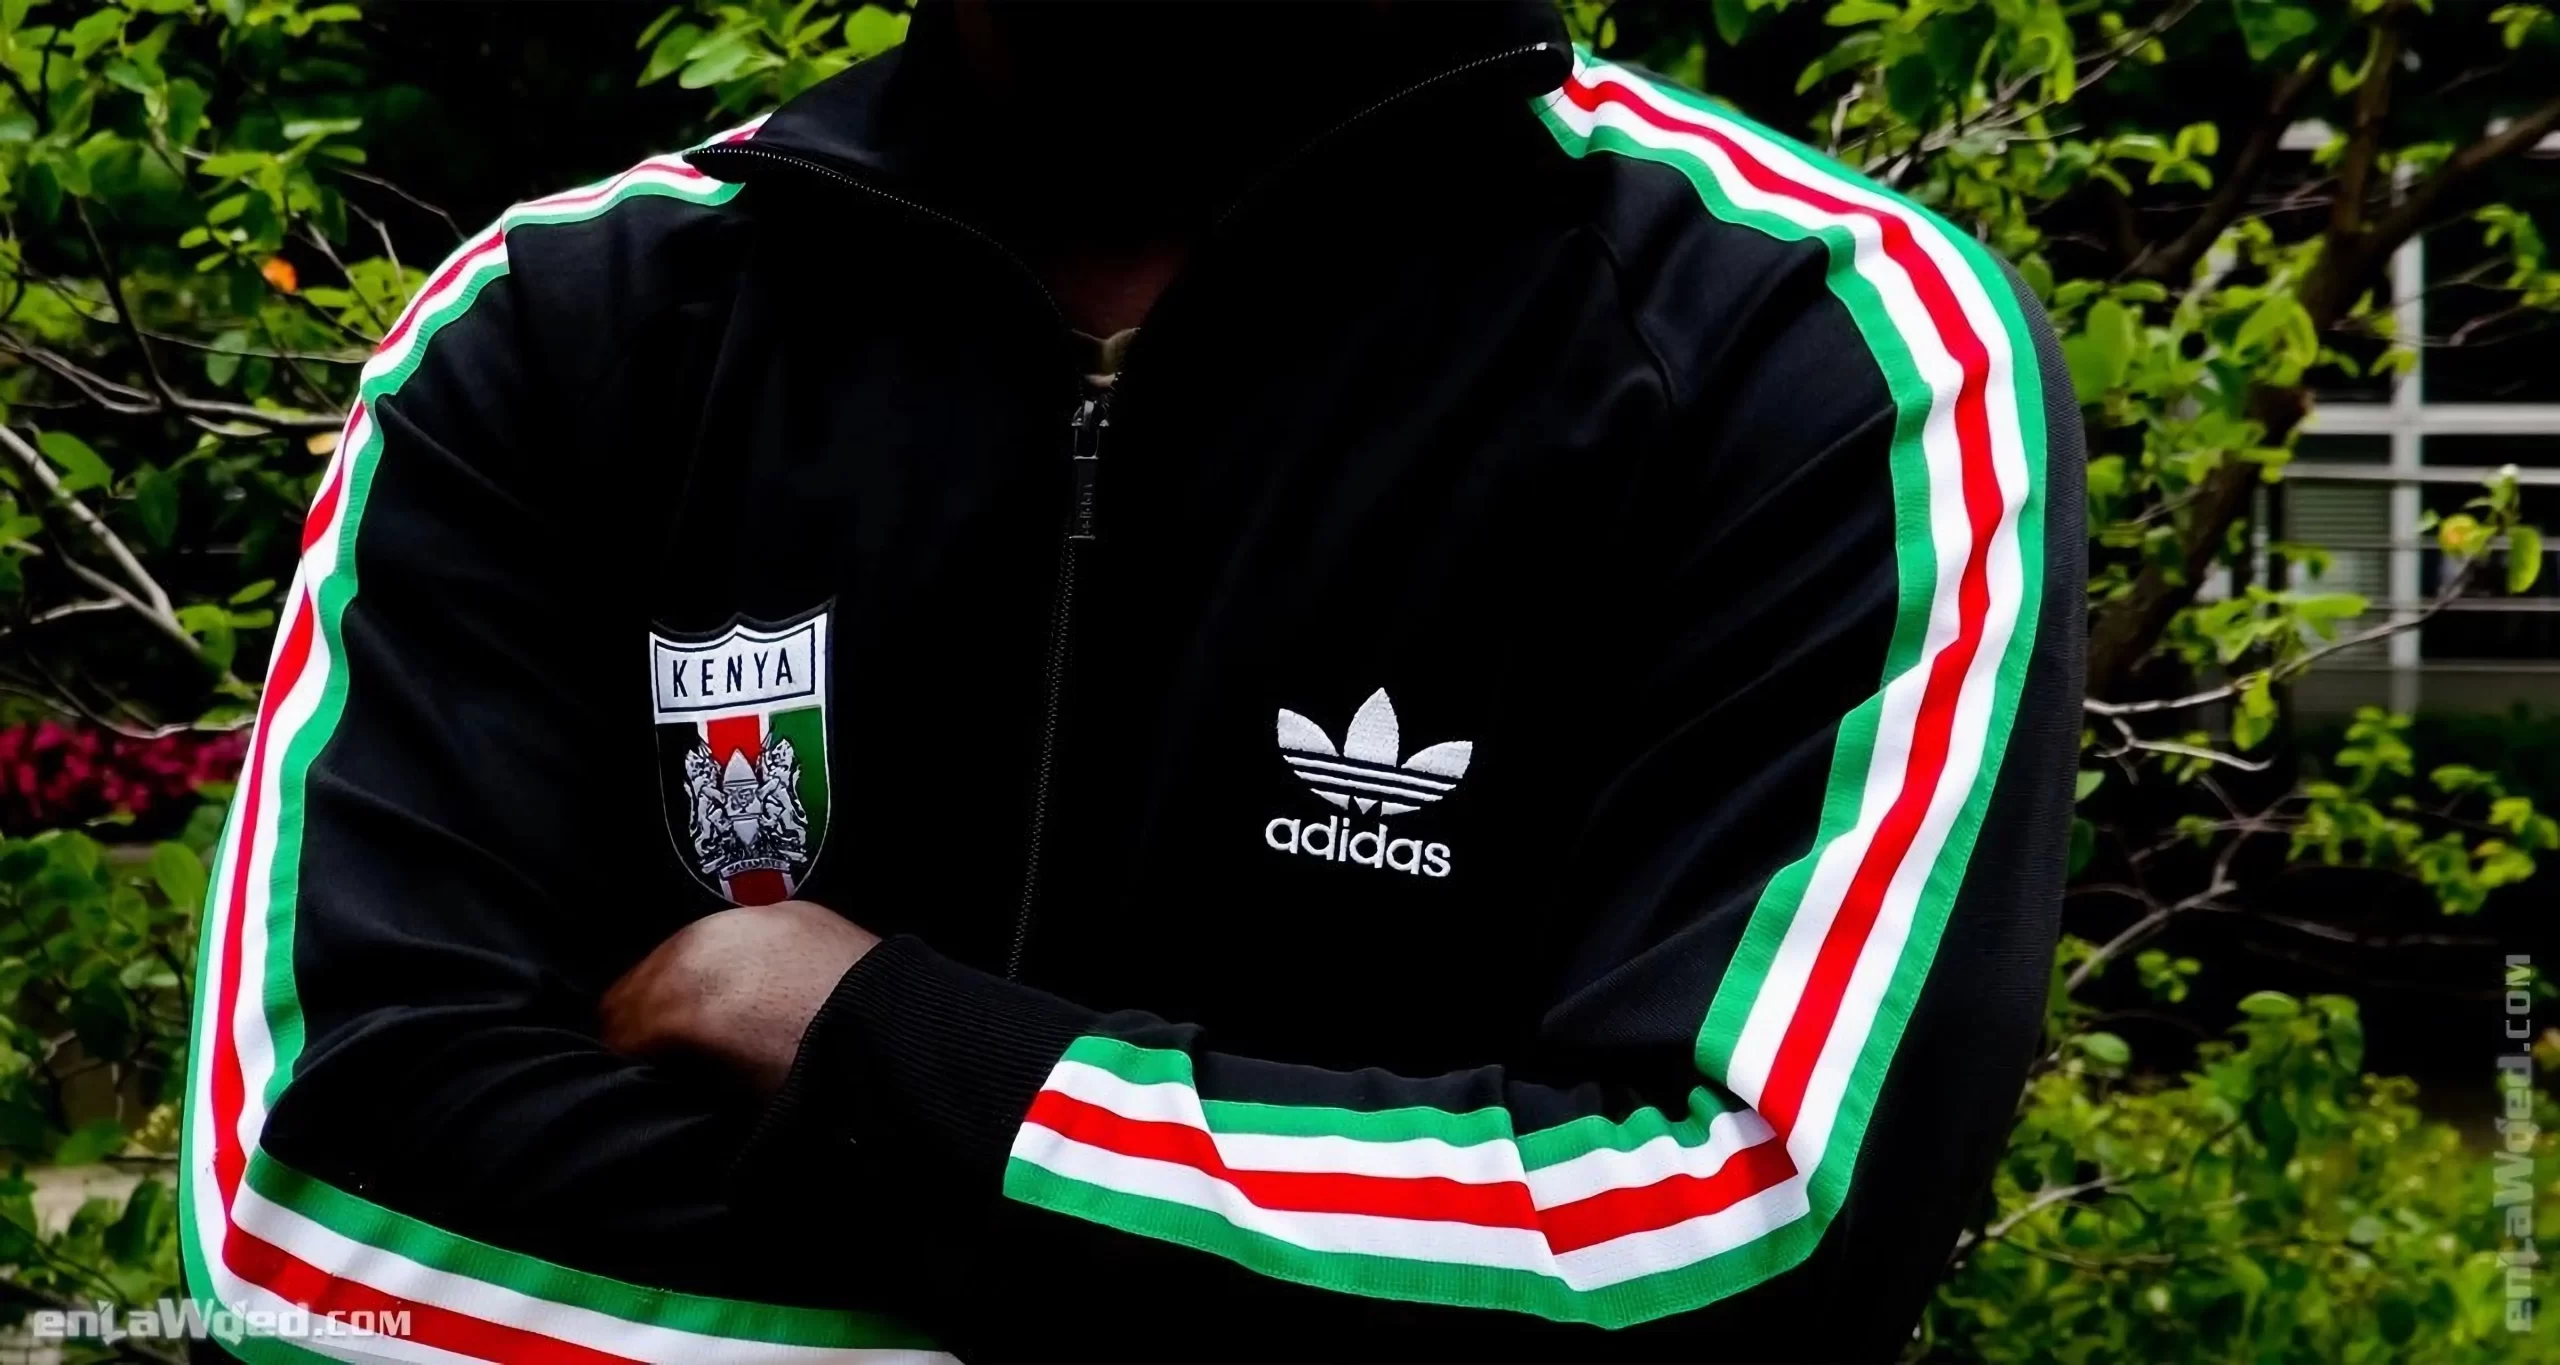 Men’s 2007 Kenya Harambee TT by Adidas Originals: Breakthrough (EnLawded.com file #lmcgjzzzo3pfjaetger)